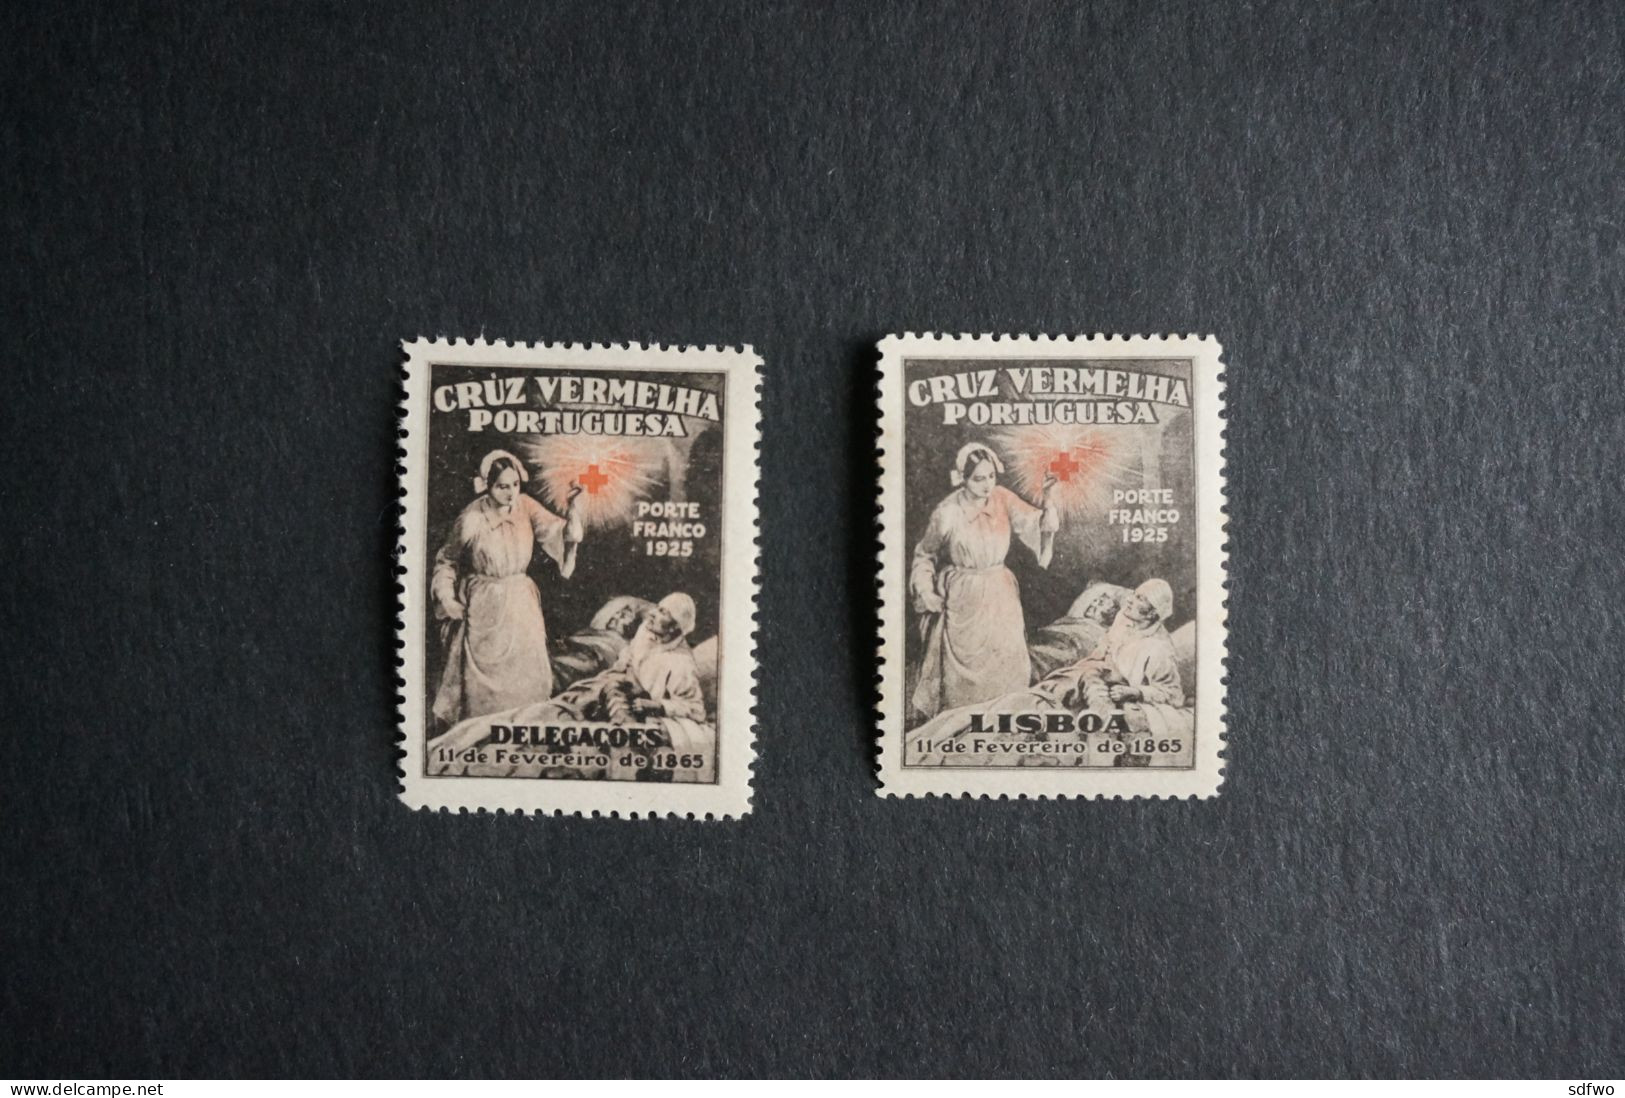 (T2) Portugal 1926 - Red Cross - Lisboa And Delegações Stamps Set - MH - Unused Stamps